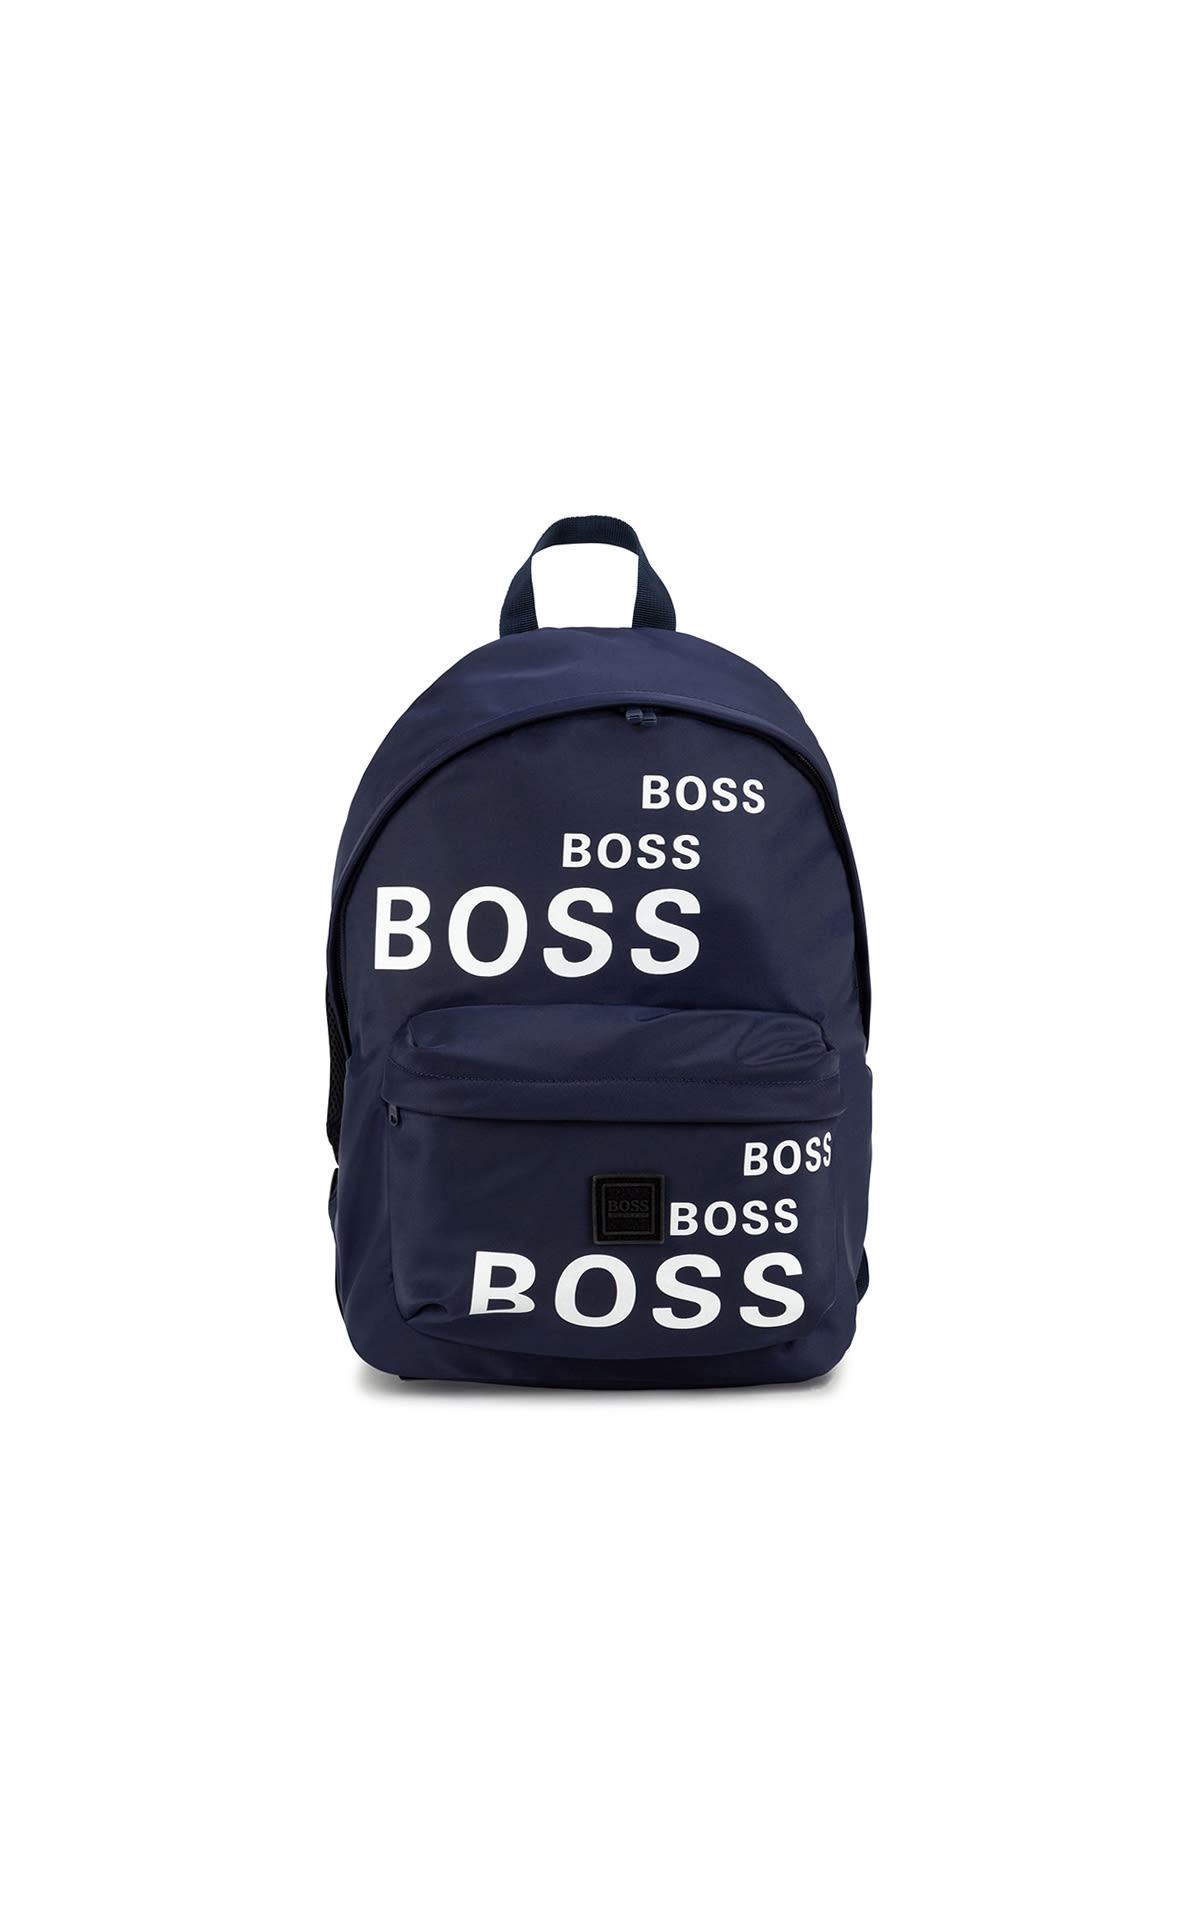 Boss Backpack Kids Around